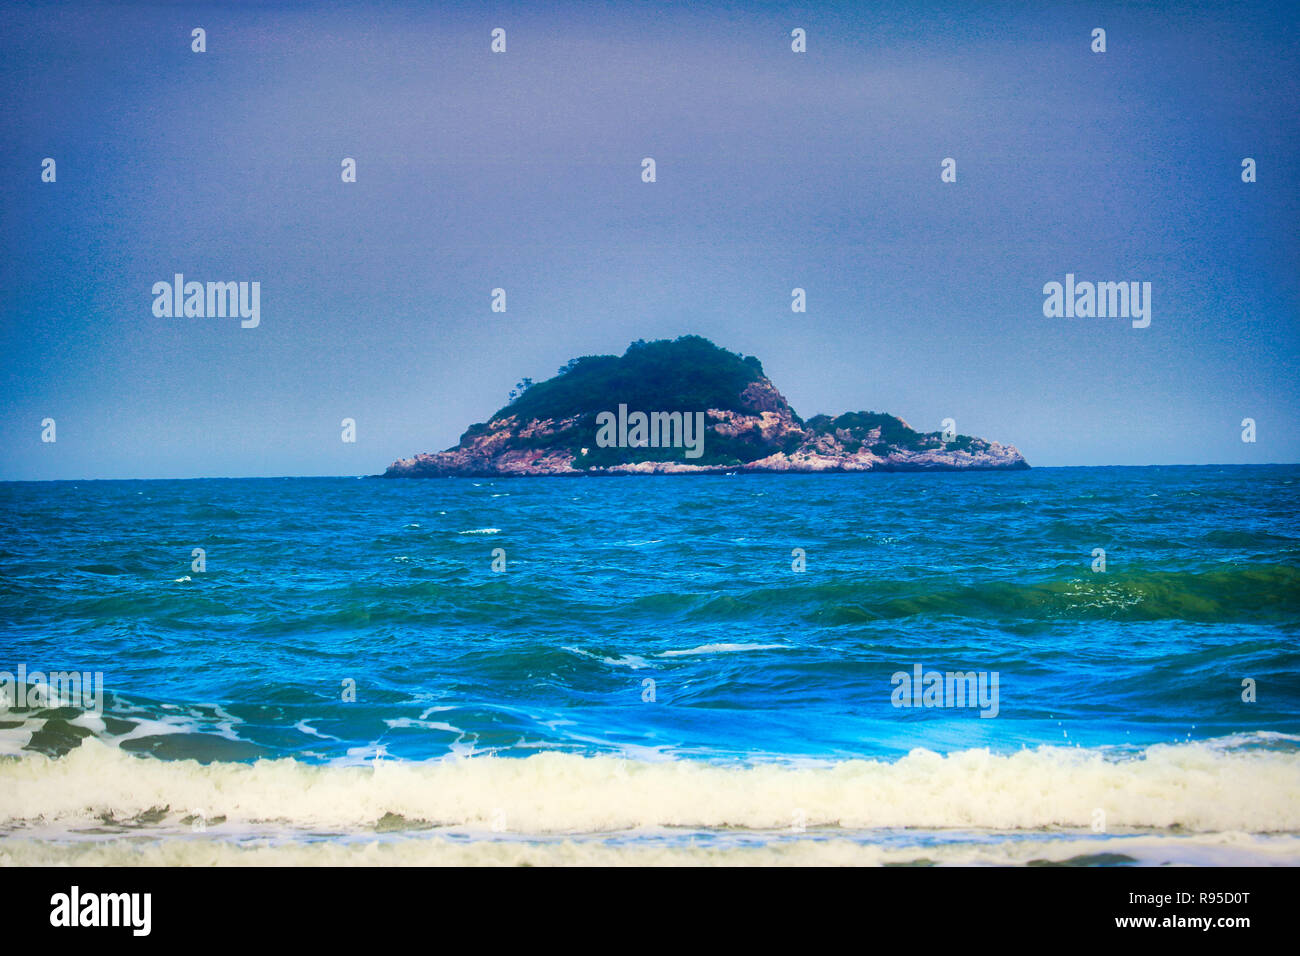 Questa immagine mostra una solitaria isola nel mare della Thailandia fotografato dal continente Foto Stock